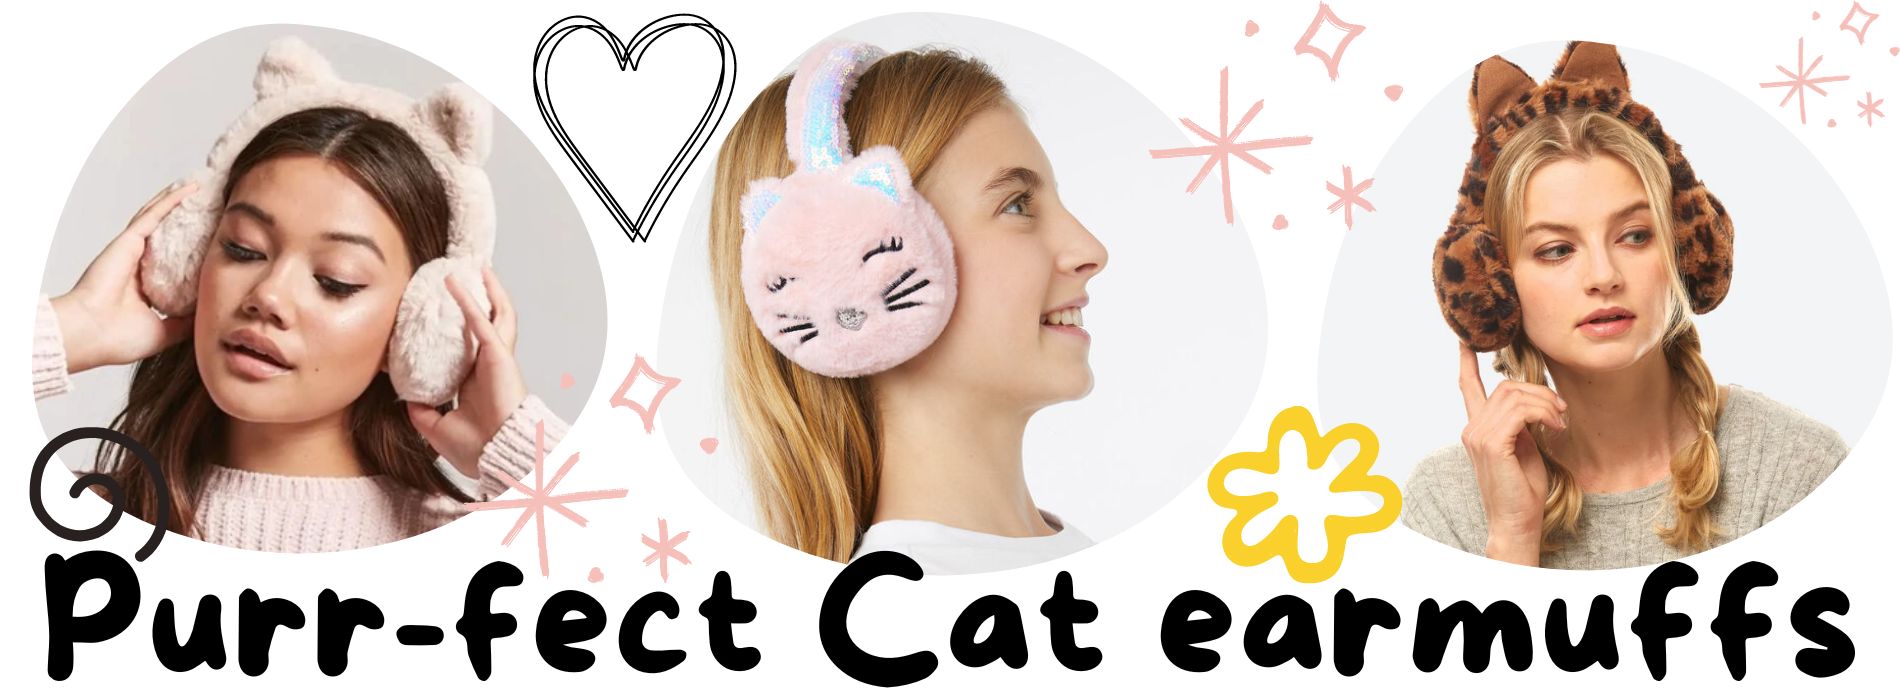 cat-earmuffs